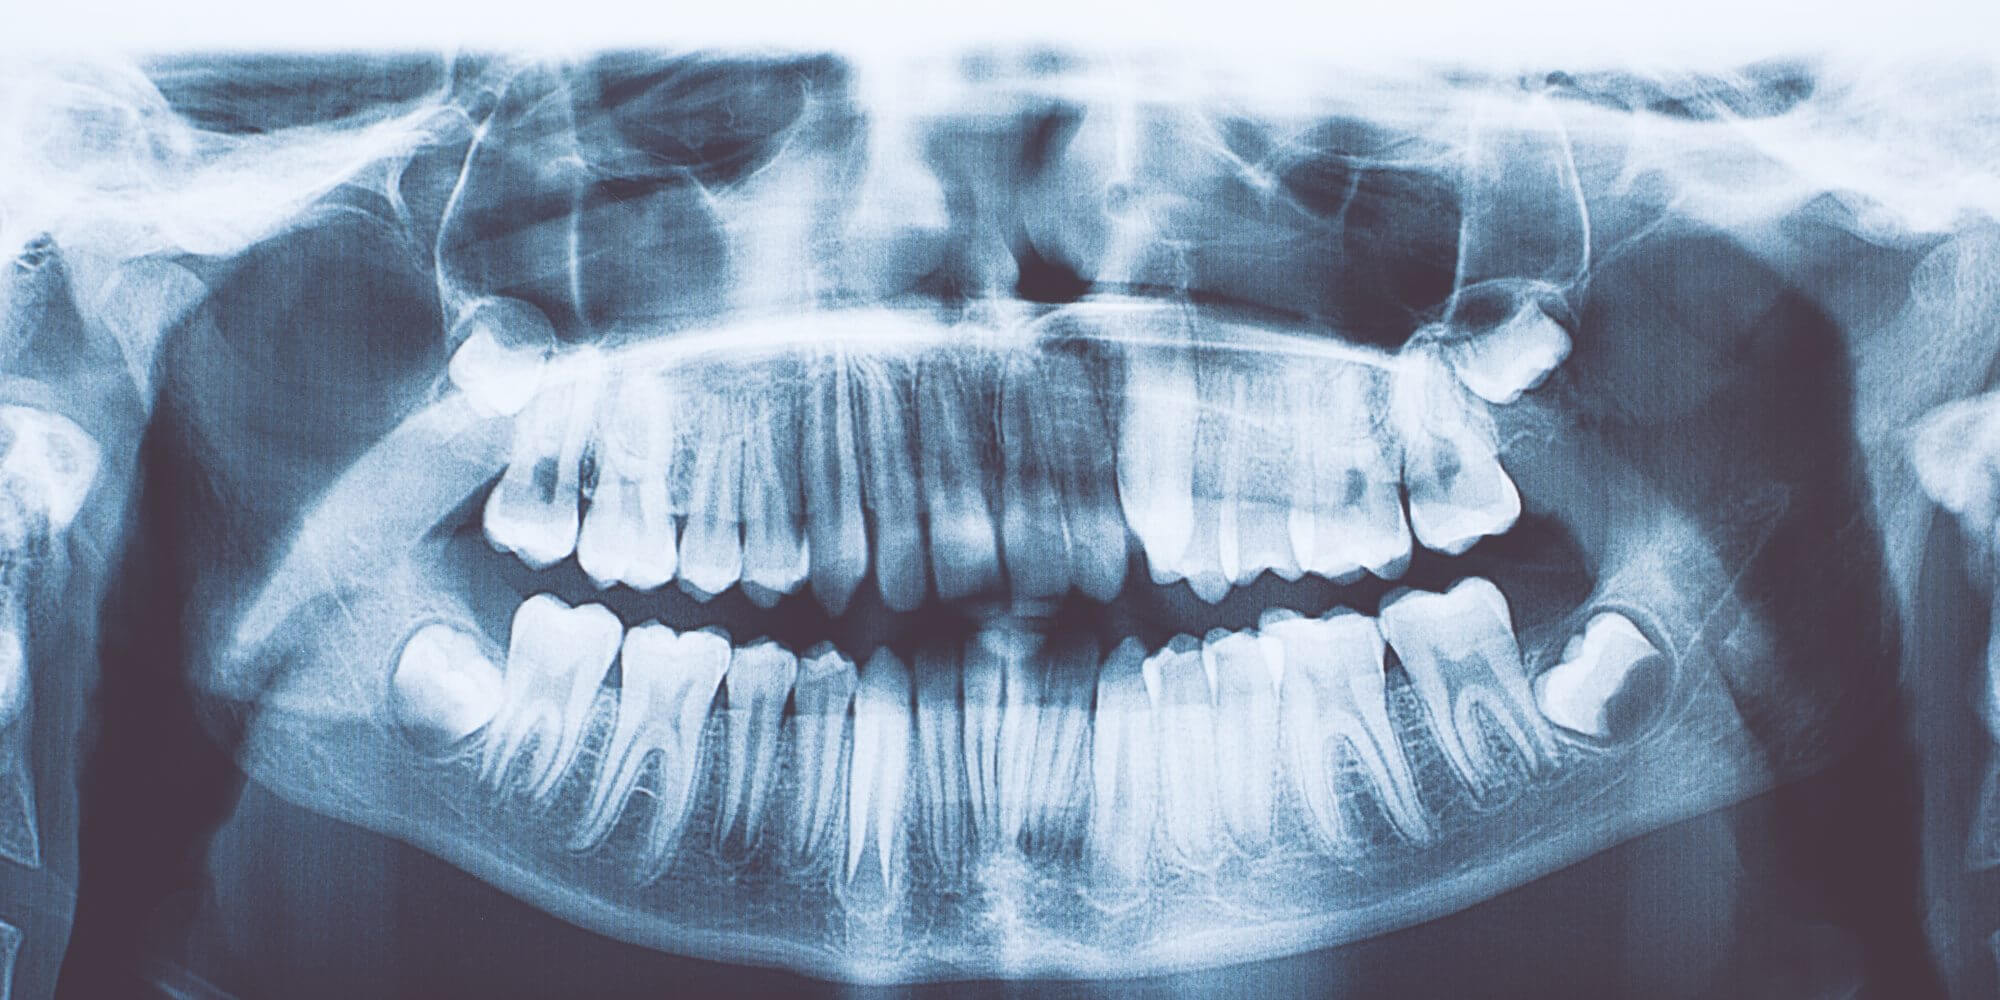 У індійського хлопчика знайдено 526 зайвих зубів. Що це за хвороба?